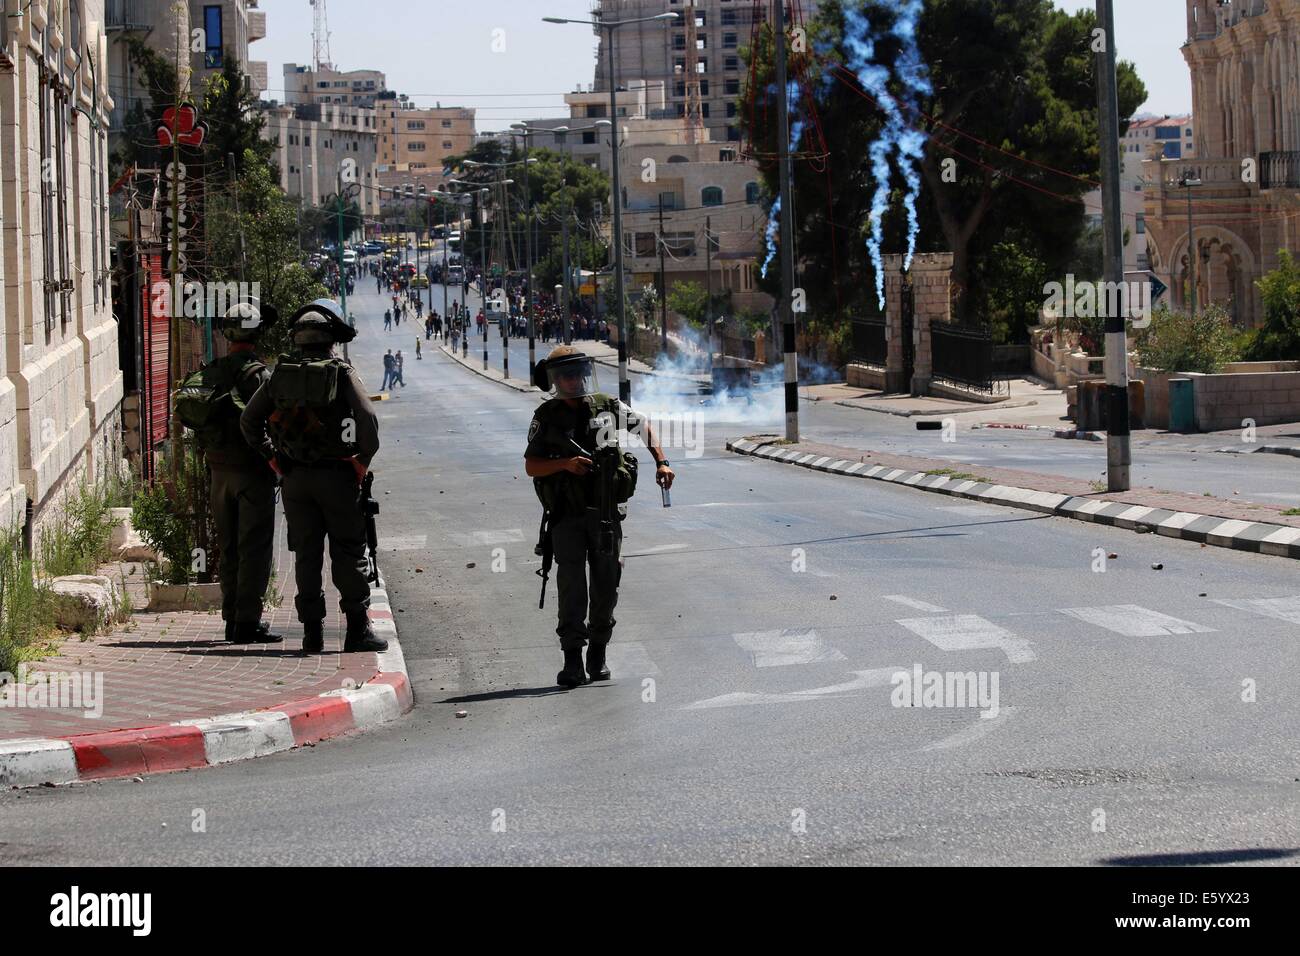 Ein israelischer Soldat nimmt einen leeren Tränengas-Kanister aus seiner Waffe. Hinter ihm regnet Tränengas herab auf die Straßen von Bethlehem. Freitagnachmittag wurde Rage in der West Bank erklärt. Früh am Morgen, nach 08:00, die 72-Stunden Waffenruhe zwischen Gaza und Israel endete und kämpfen wieder aufgenommen. In den frühen Abendstunden israelischen Truppen erschossen und Ahmad Mohammad al-Katar aus al-Amari Flüchtlingslager in der Nähe von Ramallah, als Proteste weiter solidarisch für Gaza im Westjordanland getötet. Während der Proteste gab es in Hebron über 40 verletzte. Inzwischen israelische Luftangriffe getötet ein Kind in der e Stockfoto